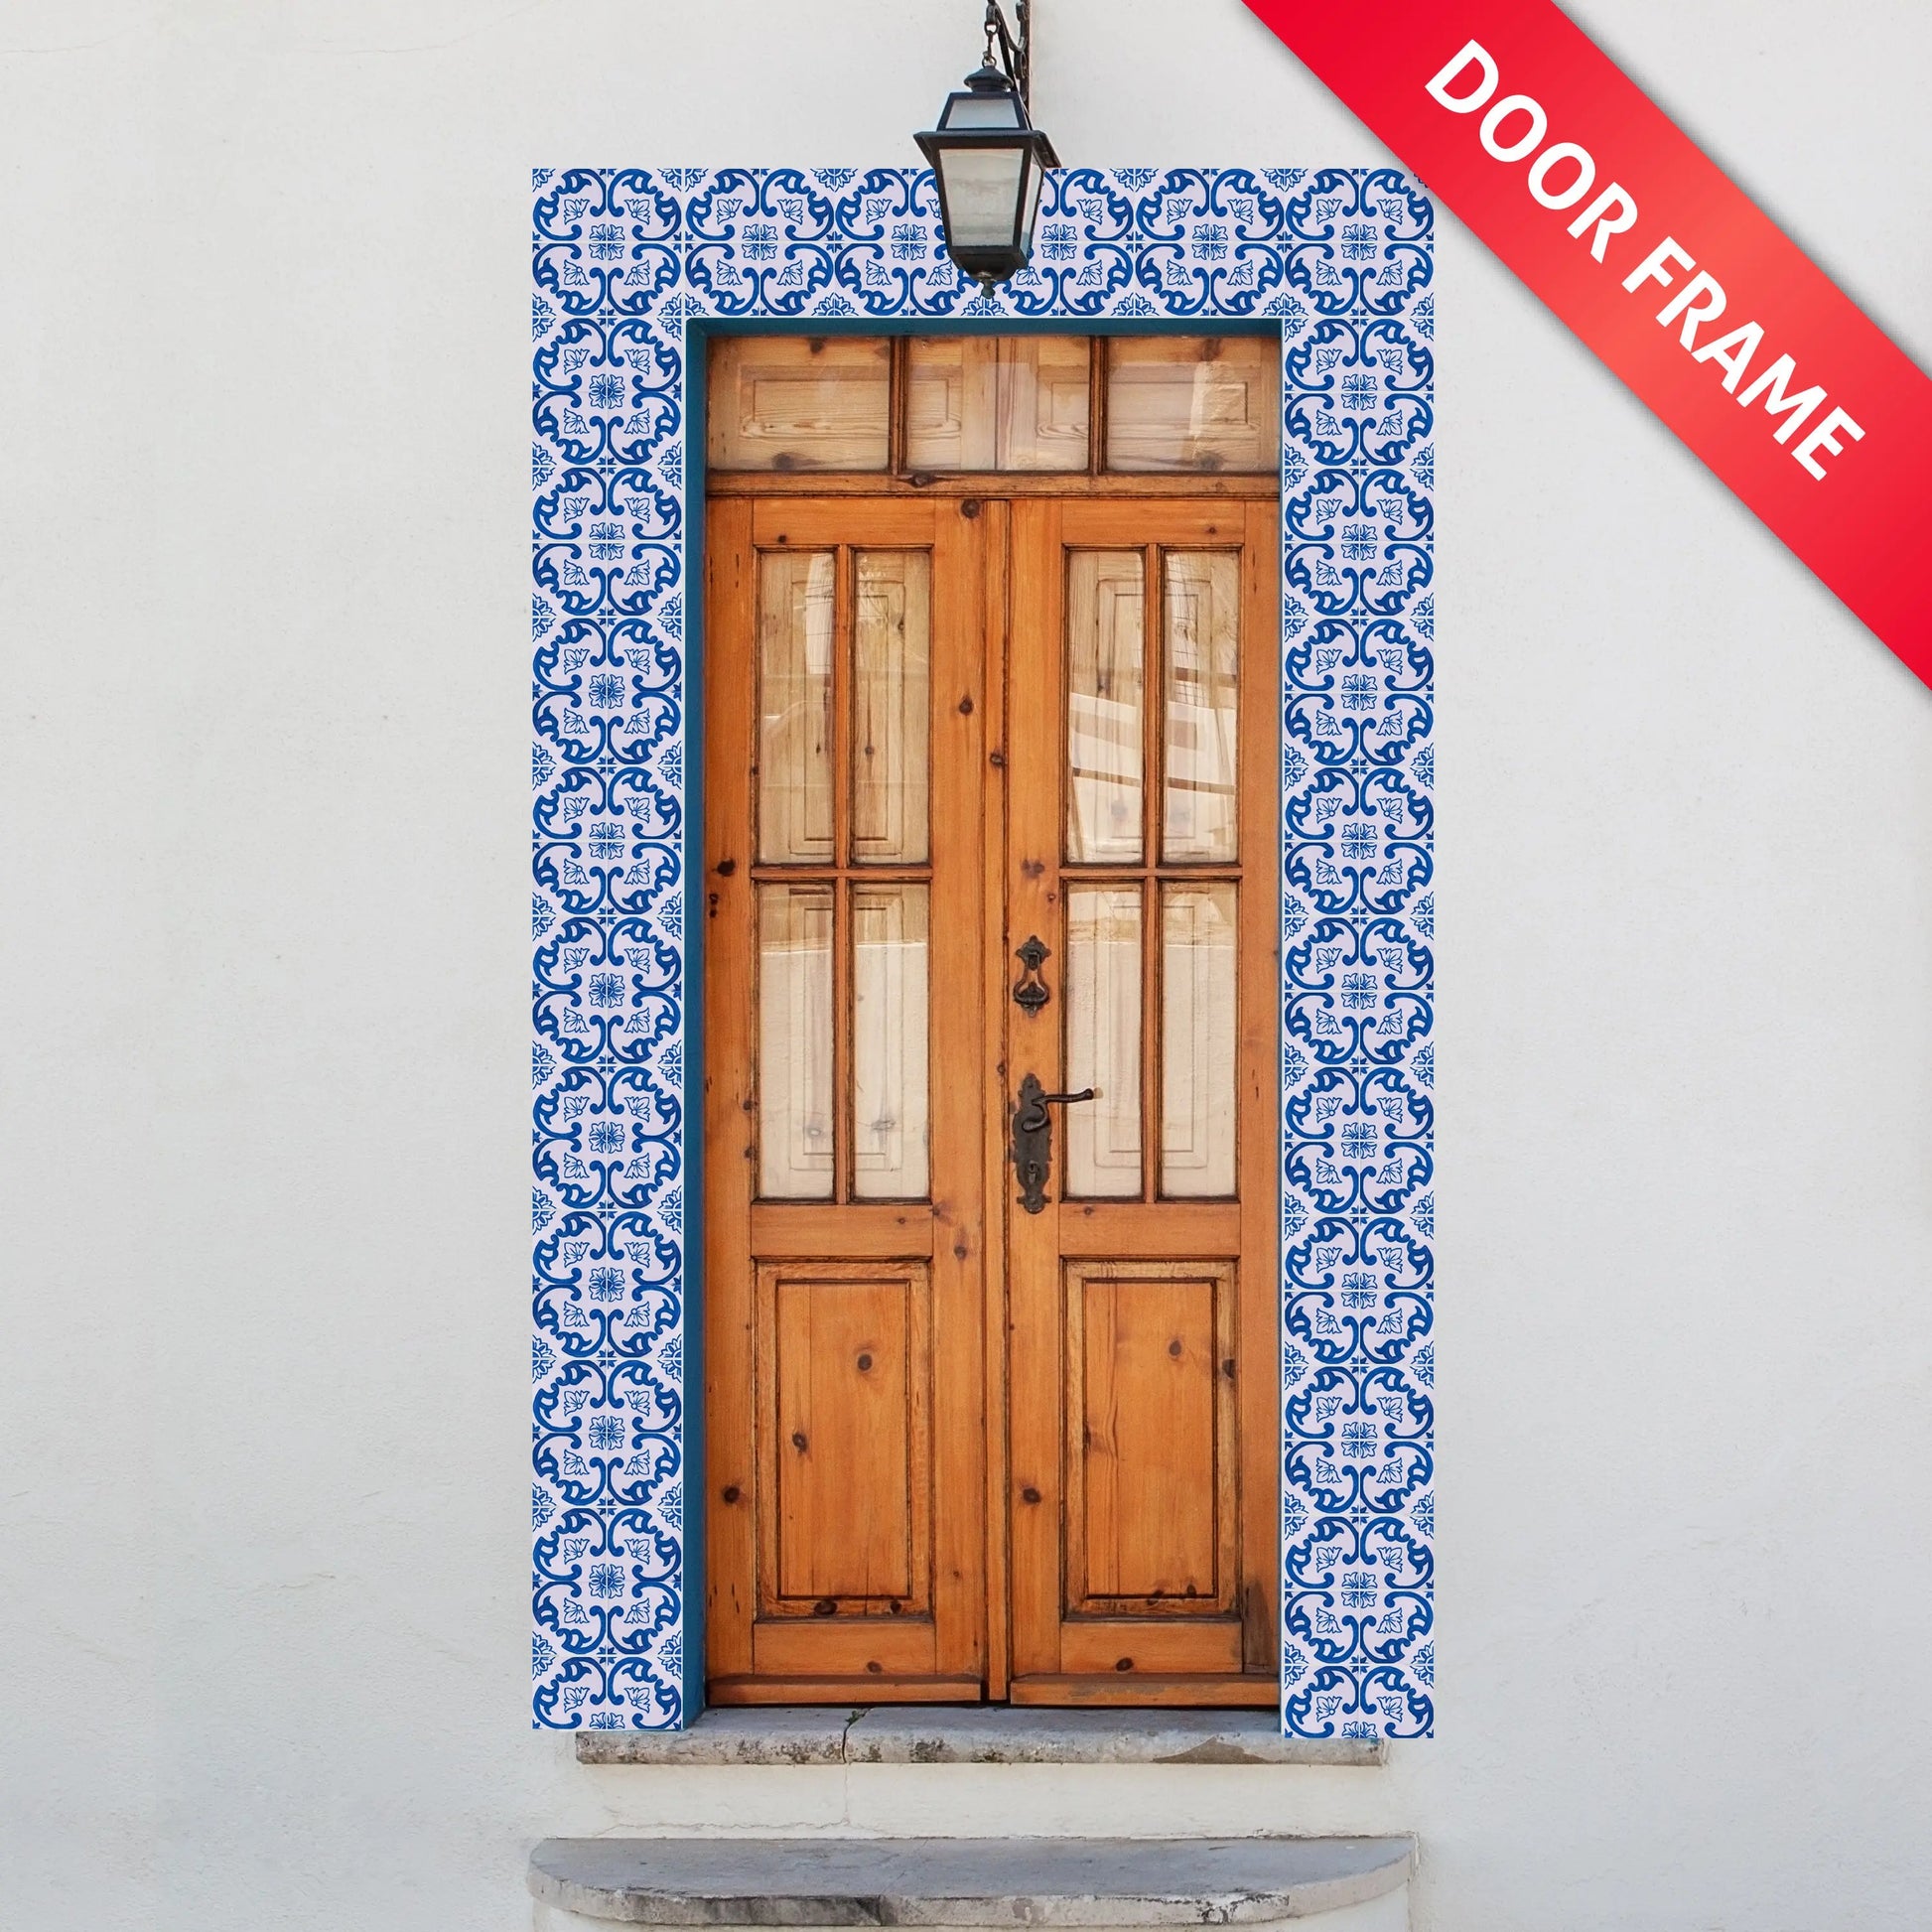 Portuguese Inspired Azulejos Flor Ceramic Tile Door Frame-Rooster Camisa 